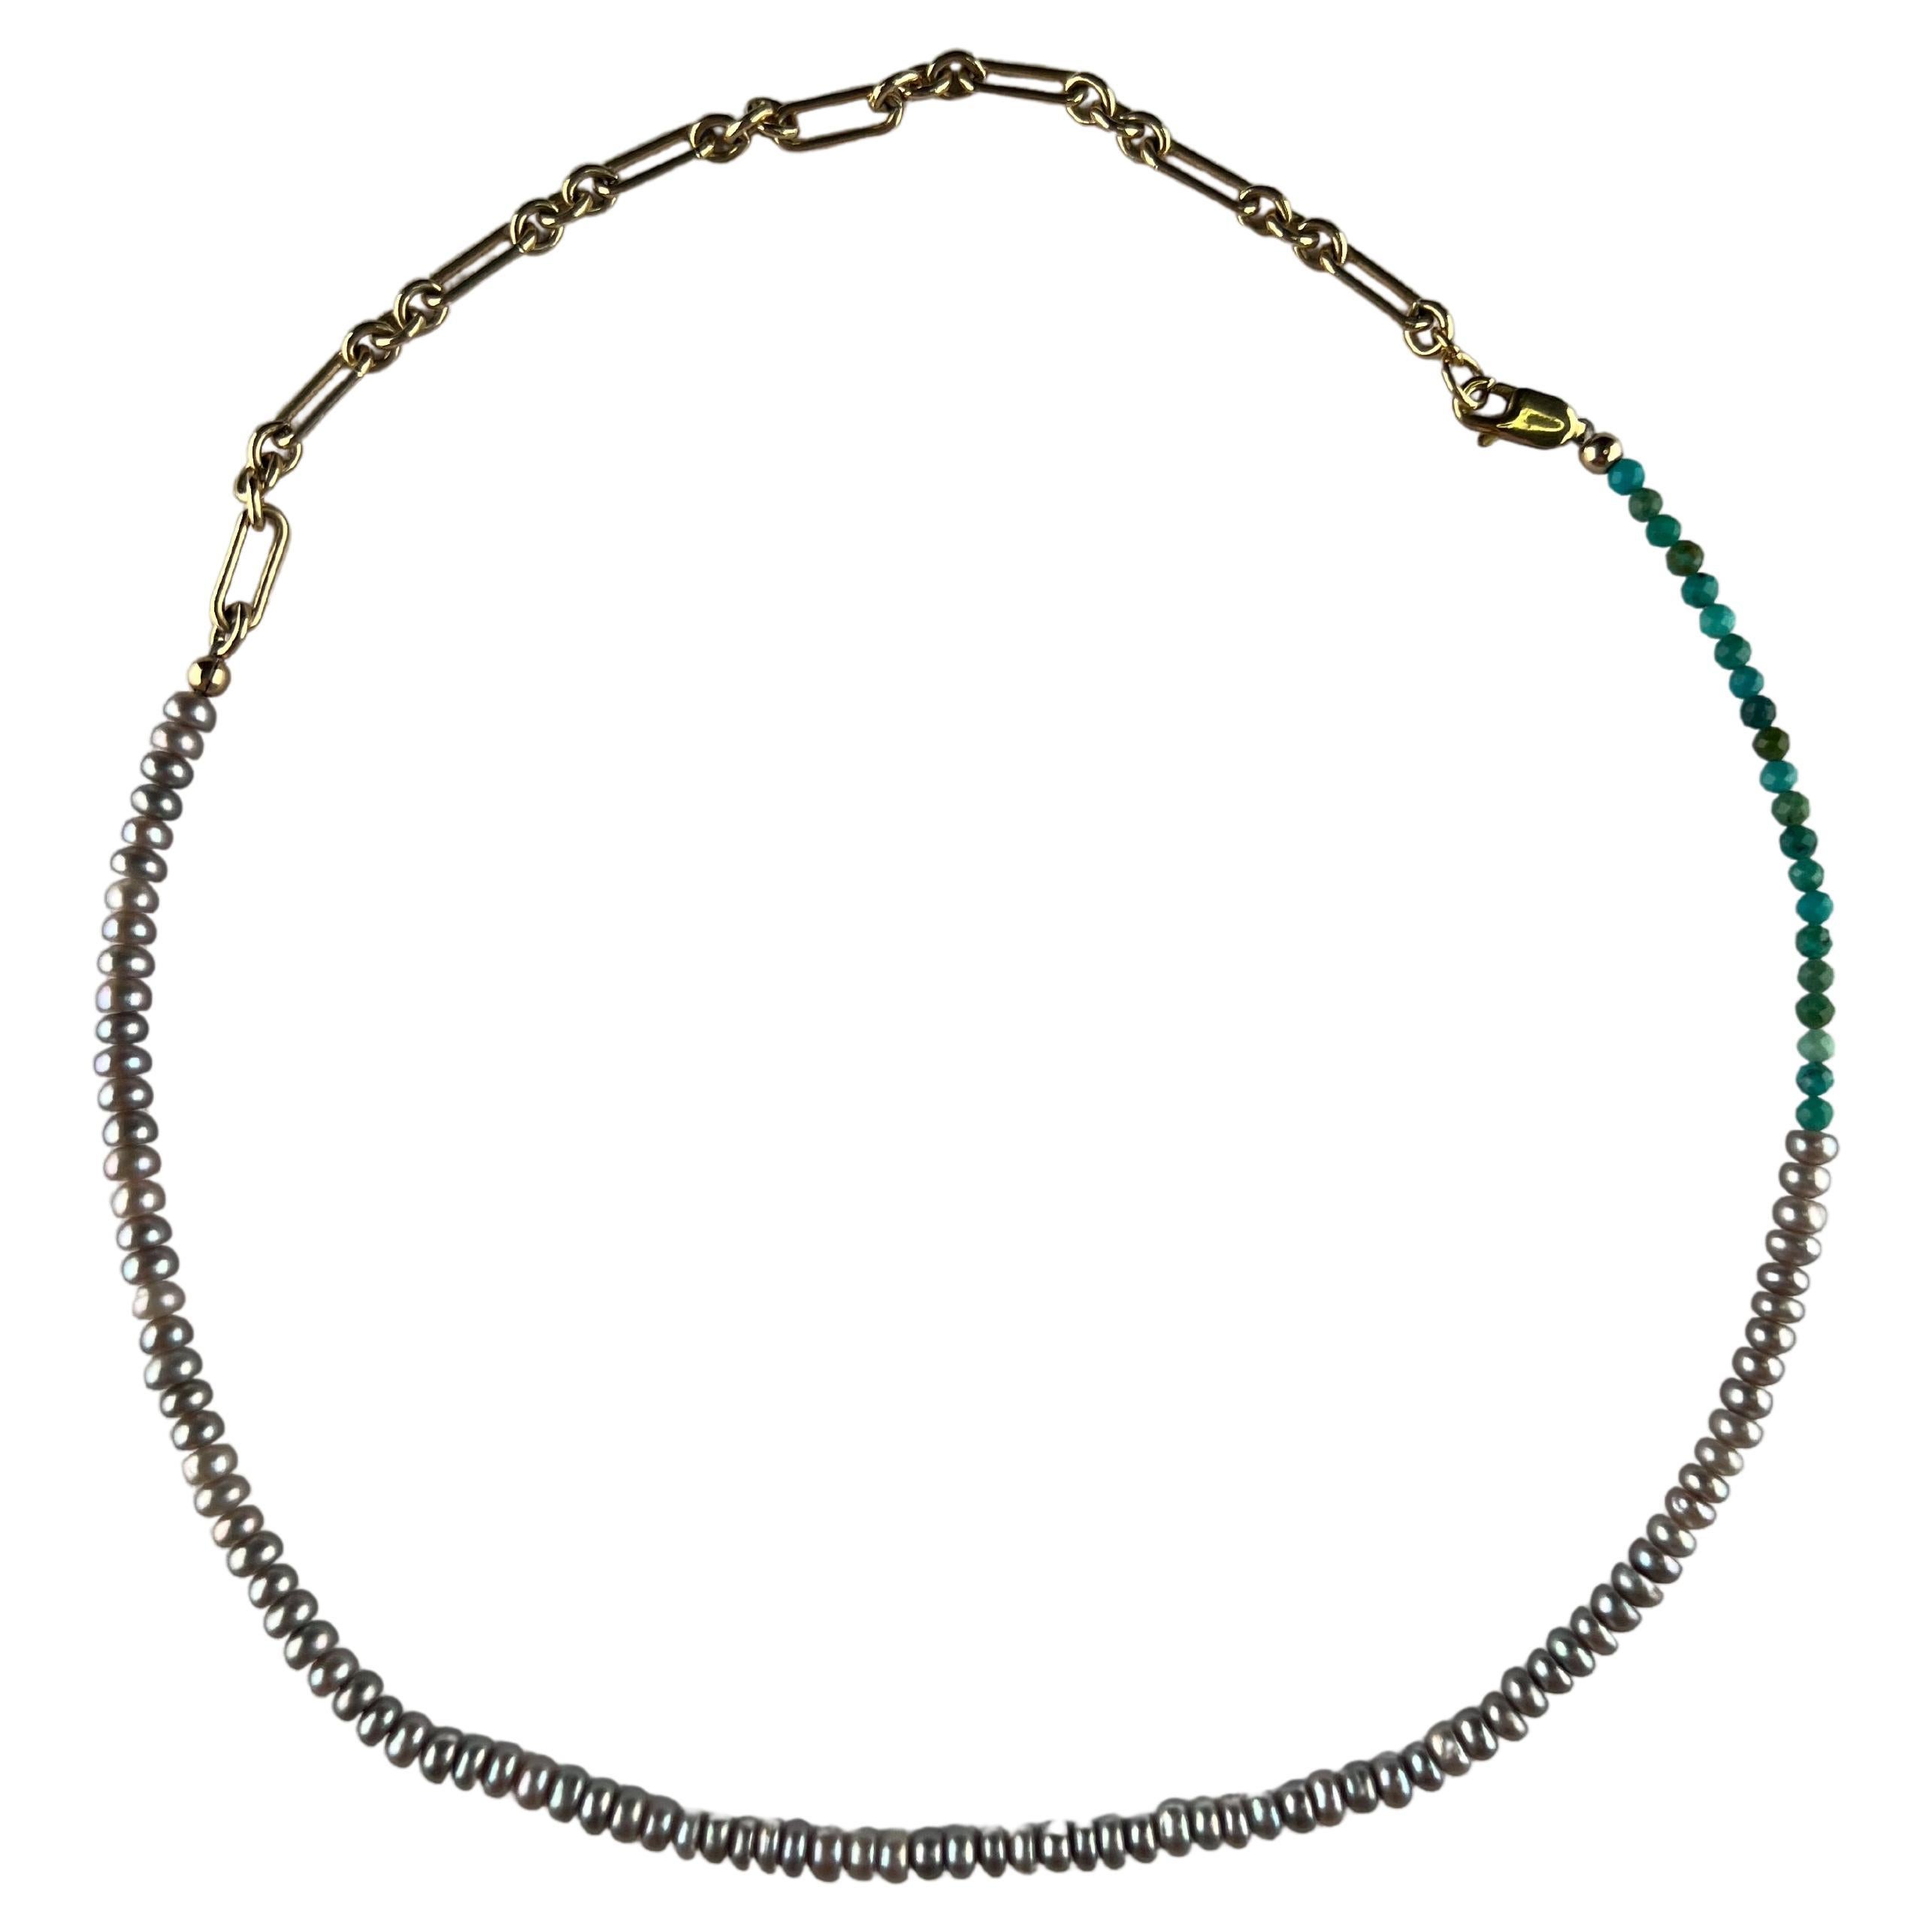 Perlenkette Silber Perle Türkis Choker Halskette von J Dauphin

